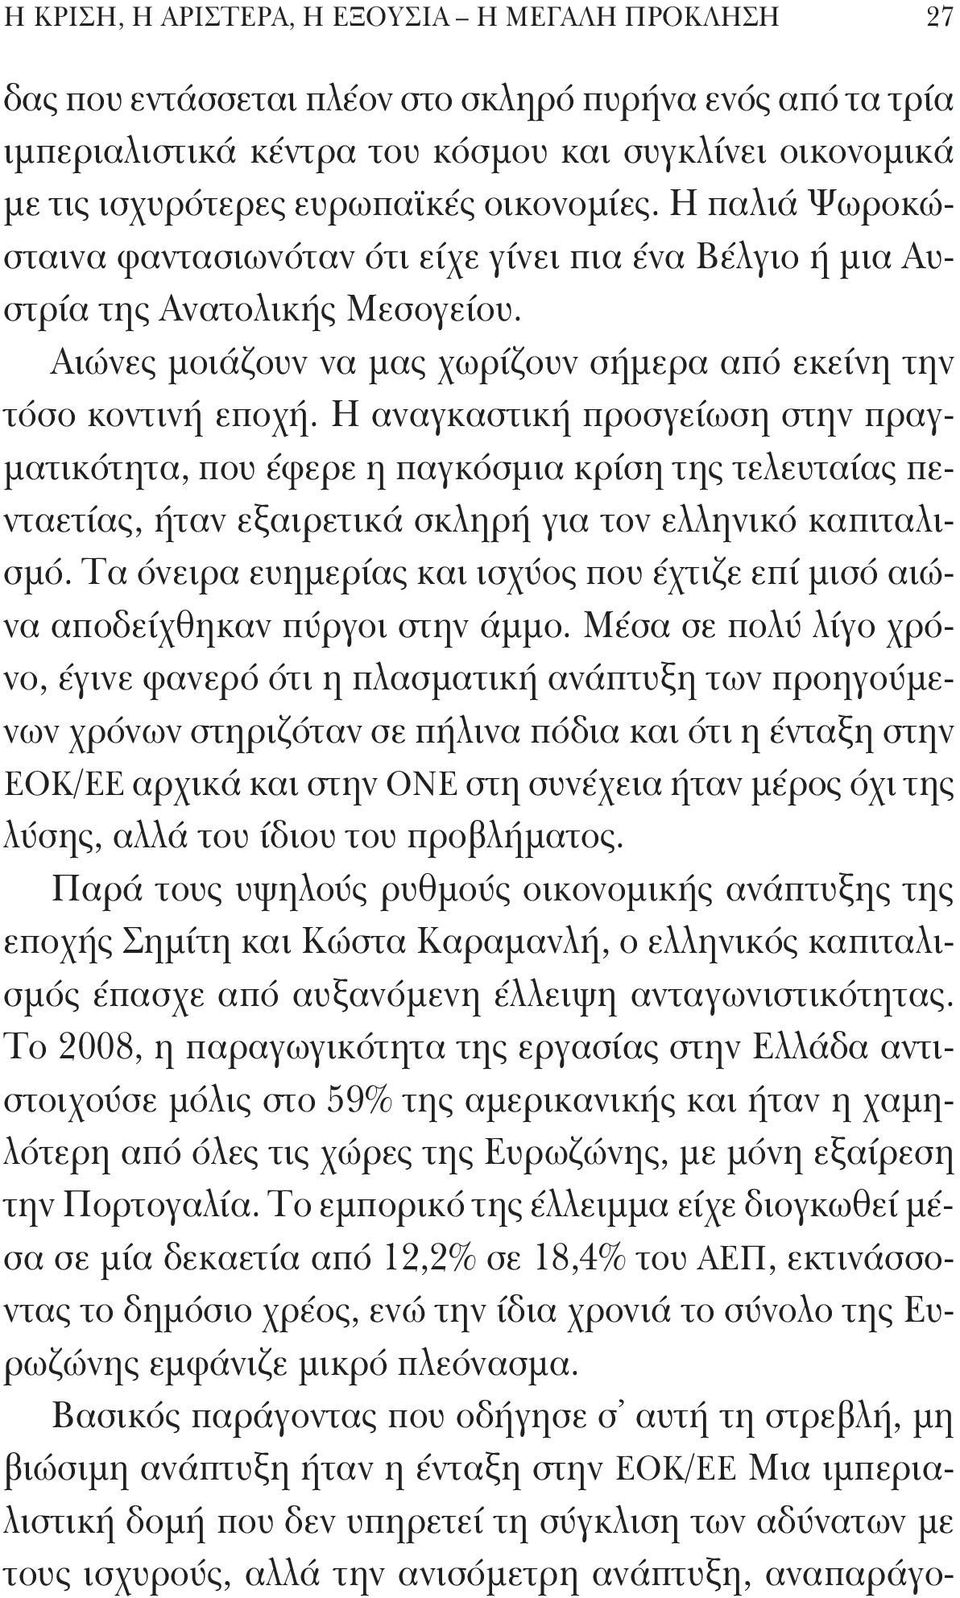 Η αναγκαστική προσγείωση στην πραγματικότητα, που έφερε η παγκόσμια κρίση της τελευταίας πενταετίας, ήταν εξαιρετικά σκληρή για τον ελληνικό καπιταλισμό.